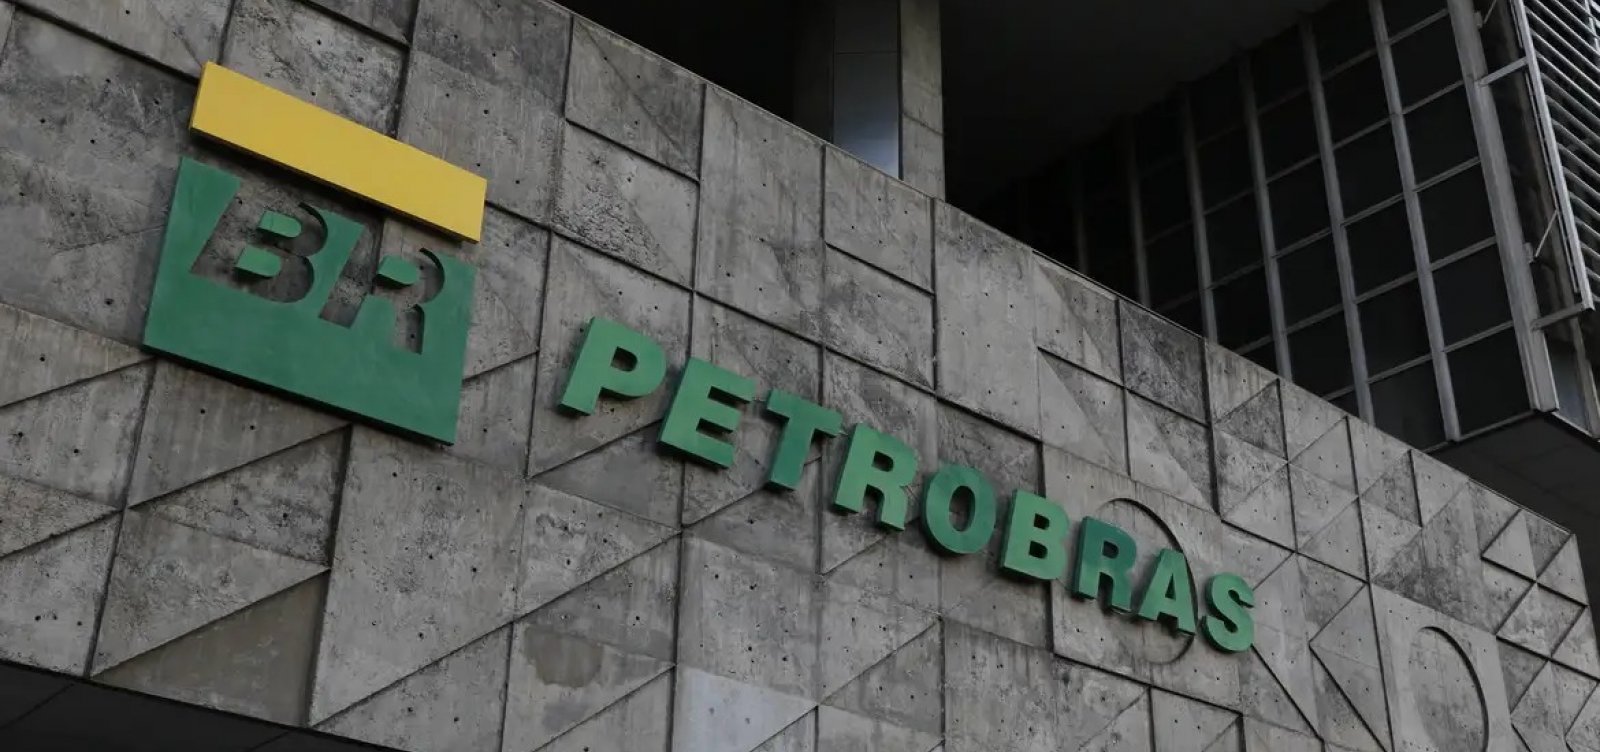 Petrobras terá quatro mulheres na diretoria da estatal